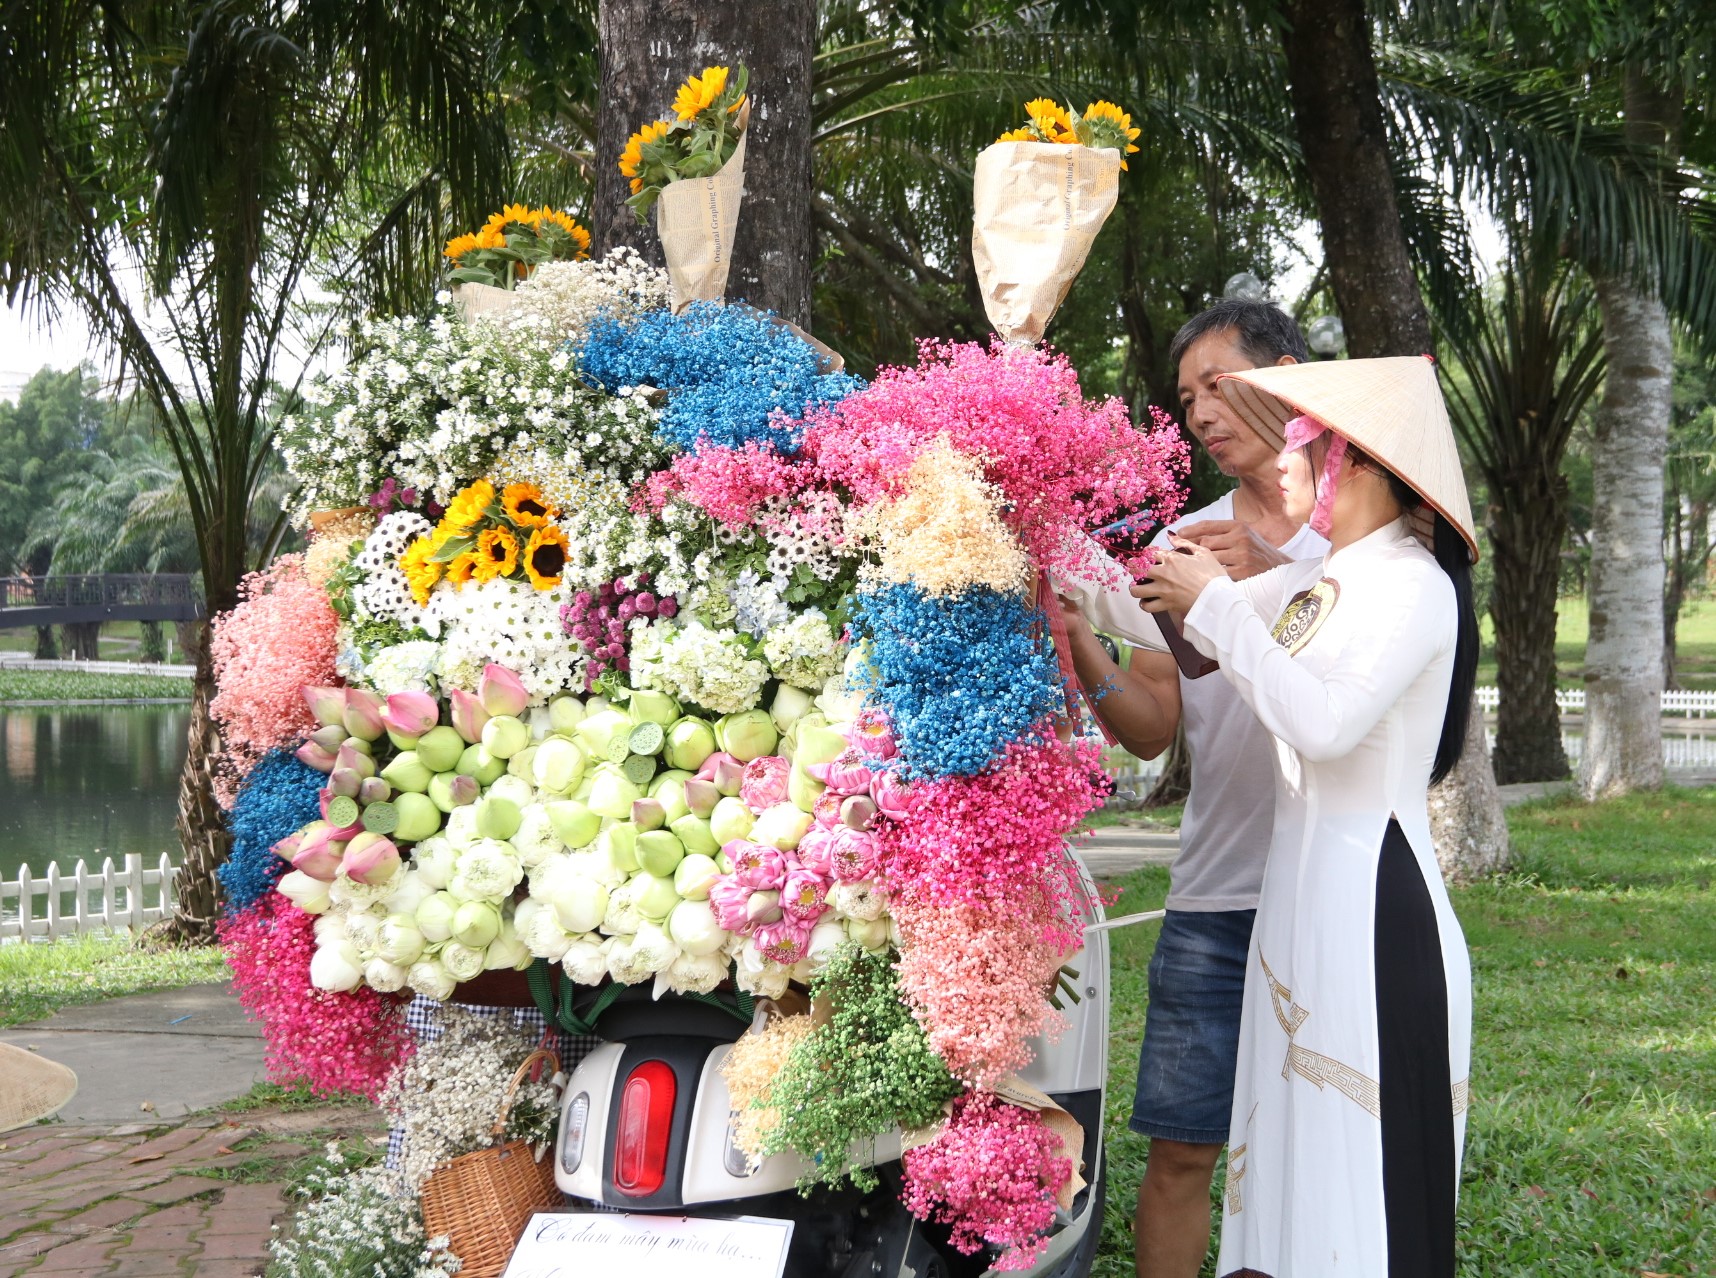 Bạn Nguyễn Thị Thơ (28 tuổi) cho biết, công việc của mình đang là kinh doanh quần áo. Tuy nhiên thấy các bạn trẻ chụp hình đẹp quá nên đã đi mua hoa về trang trí cho mọi người chụp hình. “Em mua rất nhiều loại hoa,